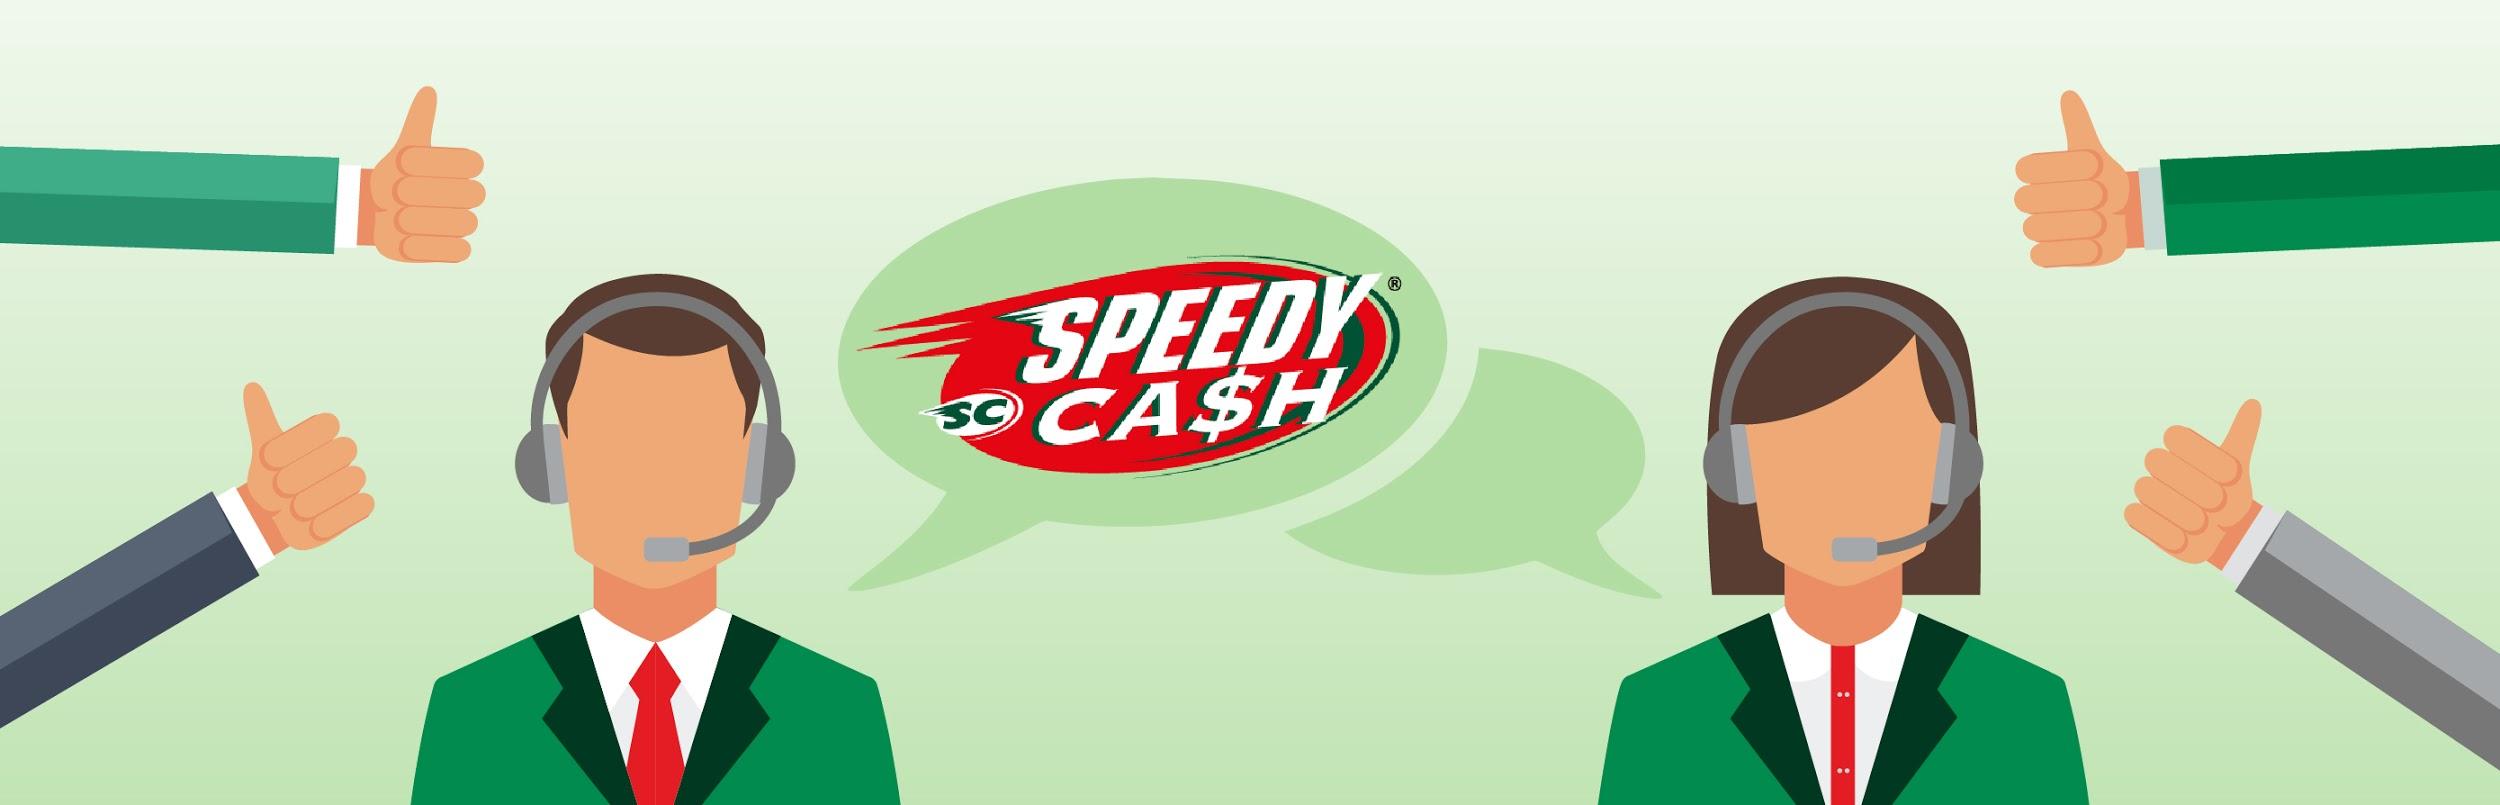 Speedy Cash Review - www.bagssaleusa.com®